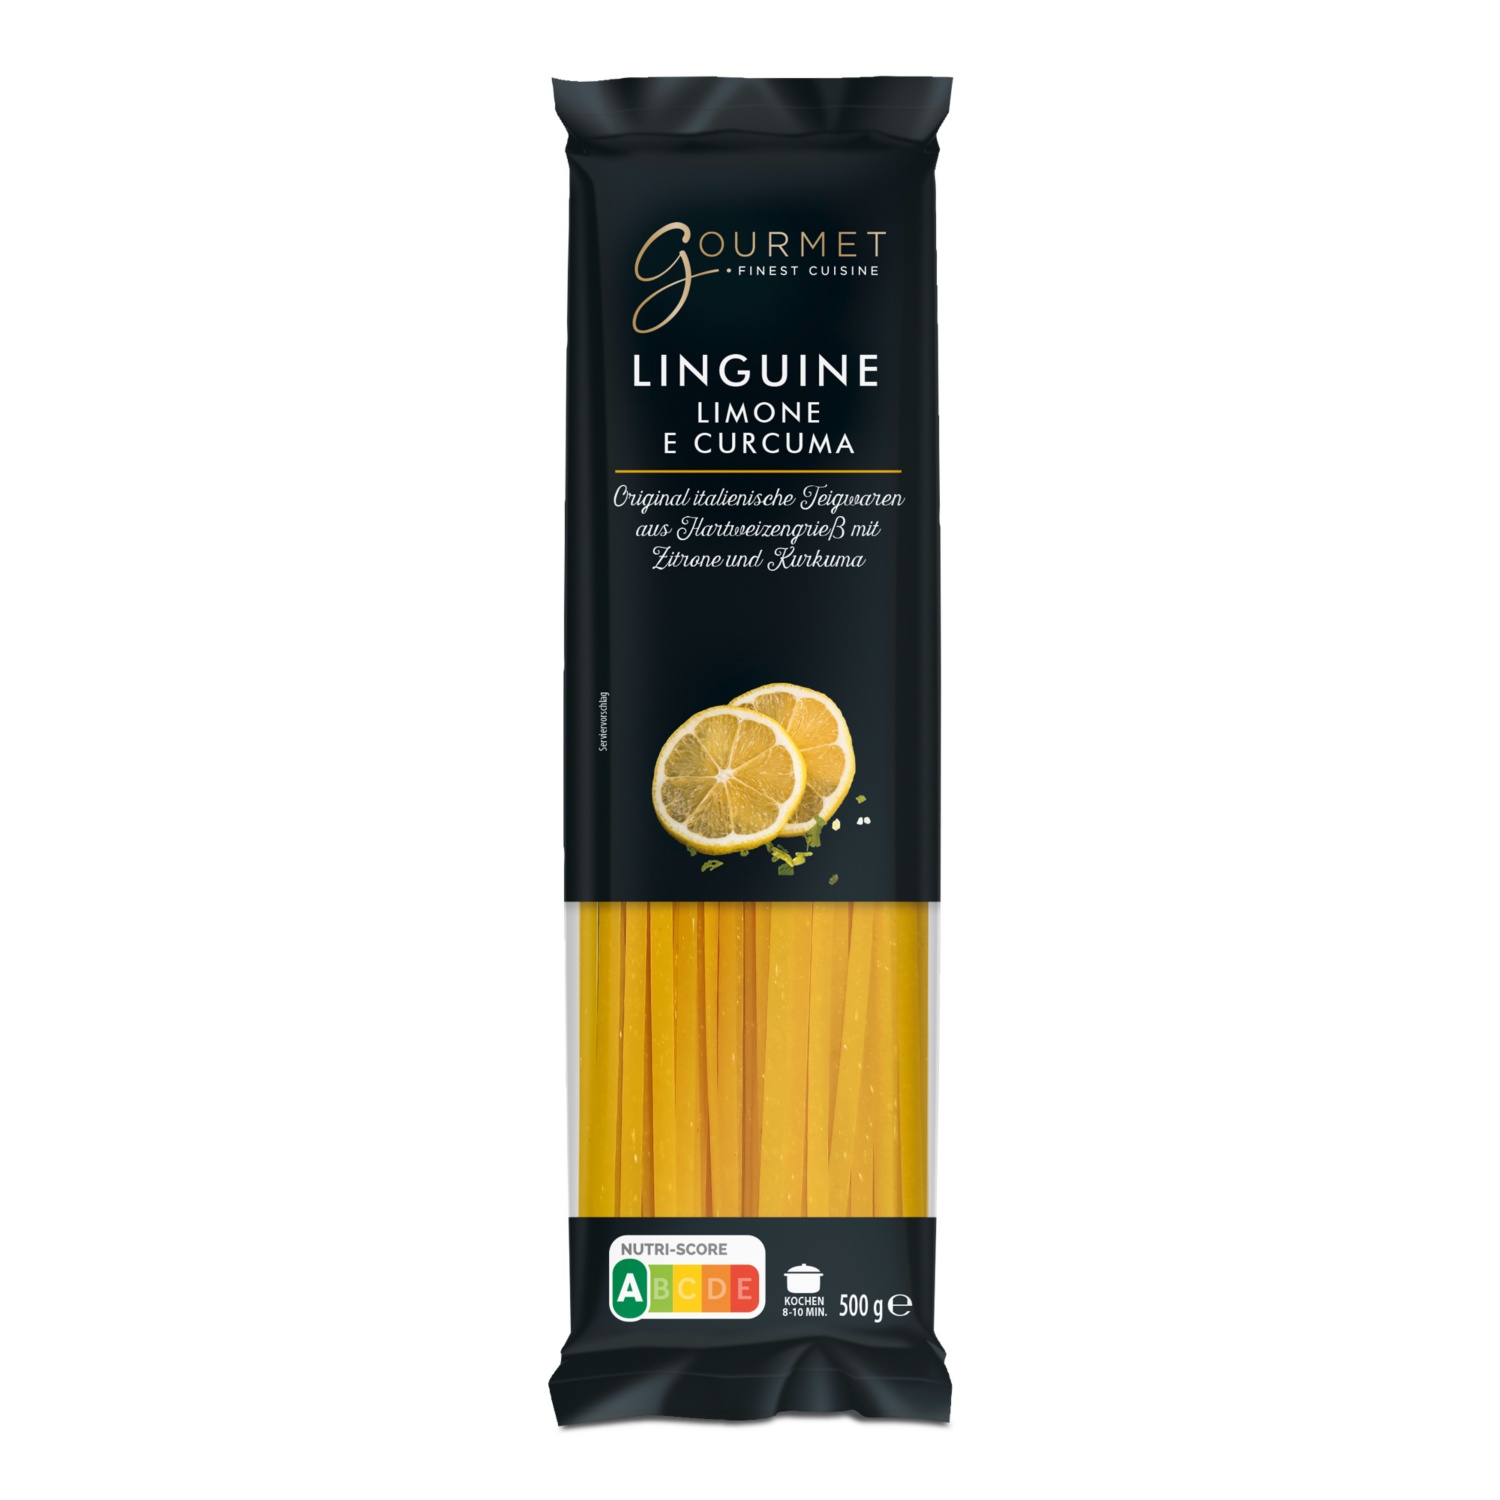 GOURMET Aromatische Linguine, Limone Curcuma